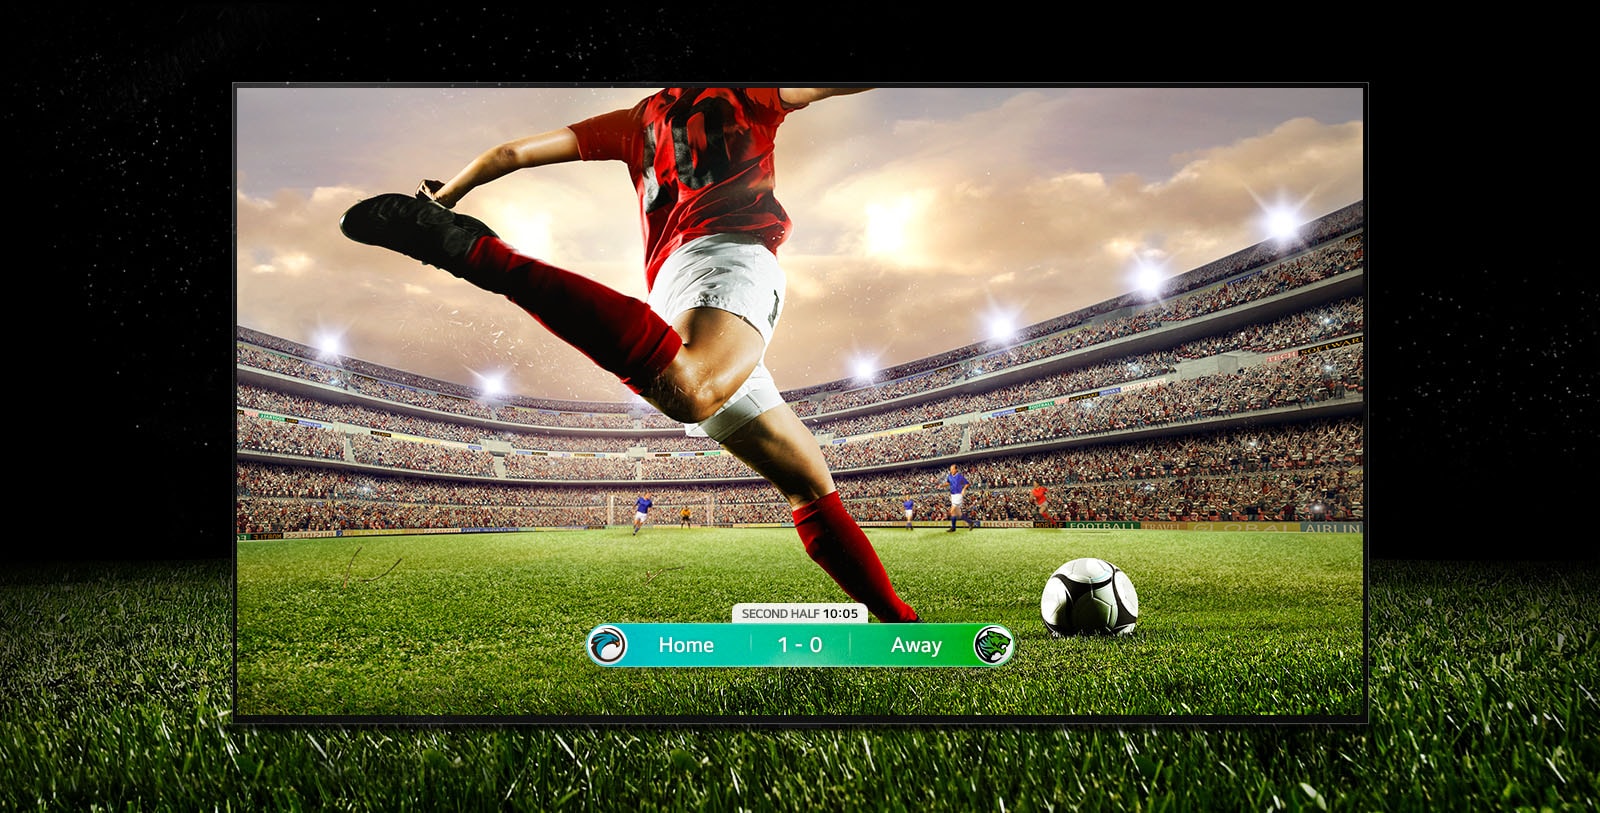 Απεικόνιση μιας οθόνης που δείχνει έναν αγώνα ποδοσφαίρου με έναν παίκτη με κόκκινη εμφάνιση έτοιμο να κλωτσήσει την μπάλα στο γήπεδο. Το σκορ του αγώνα φαίνεται στο κάτω μέρος της οθόνης. Το γρασίδι του γηπέδου εκτείνεται πέρα από την οθόνη στο μαύρο φόντο.